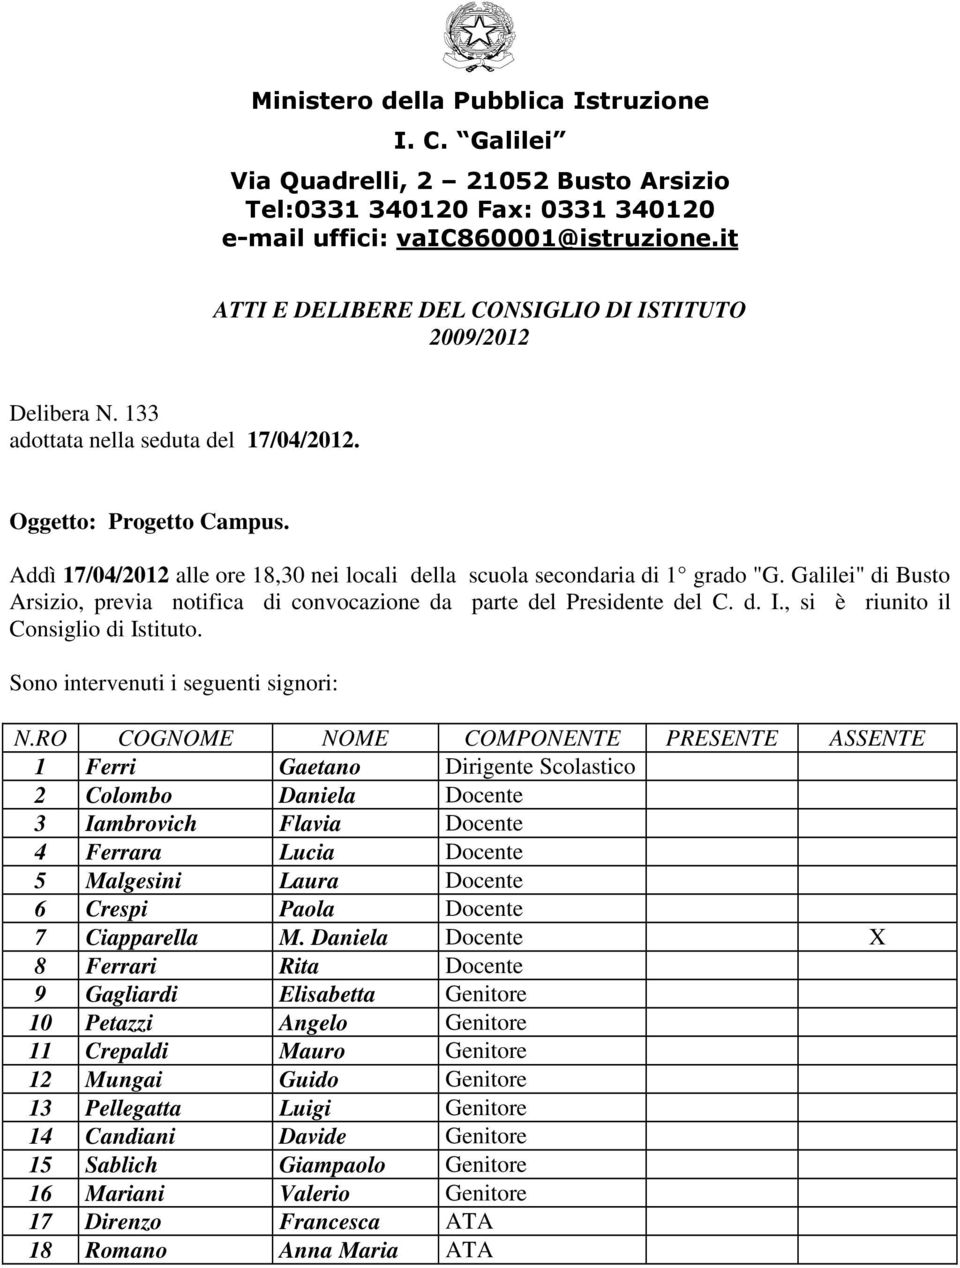 Addì 17/04/2012 alle ore 18,30 nei locali della scuola secondaria di 1 grado "G. Galilei" di Busto Arsizio, previa notifica di convocazione da parte del Presidente del C. d. I.